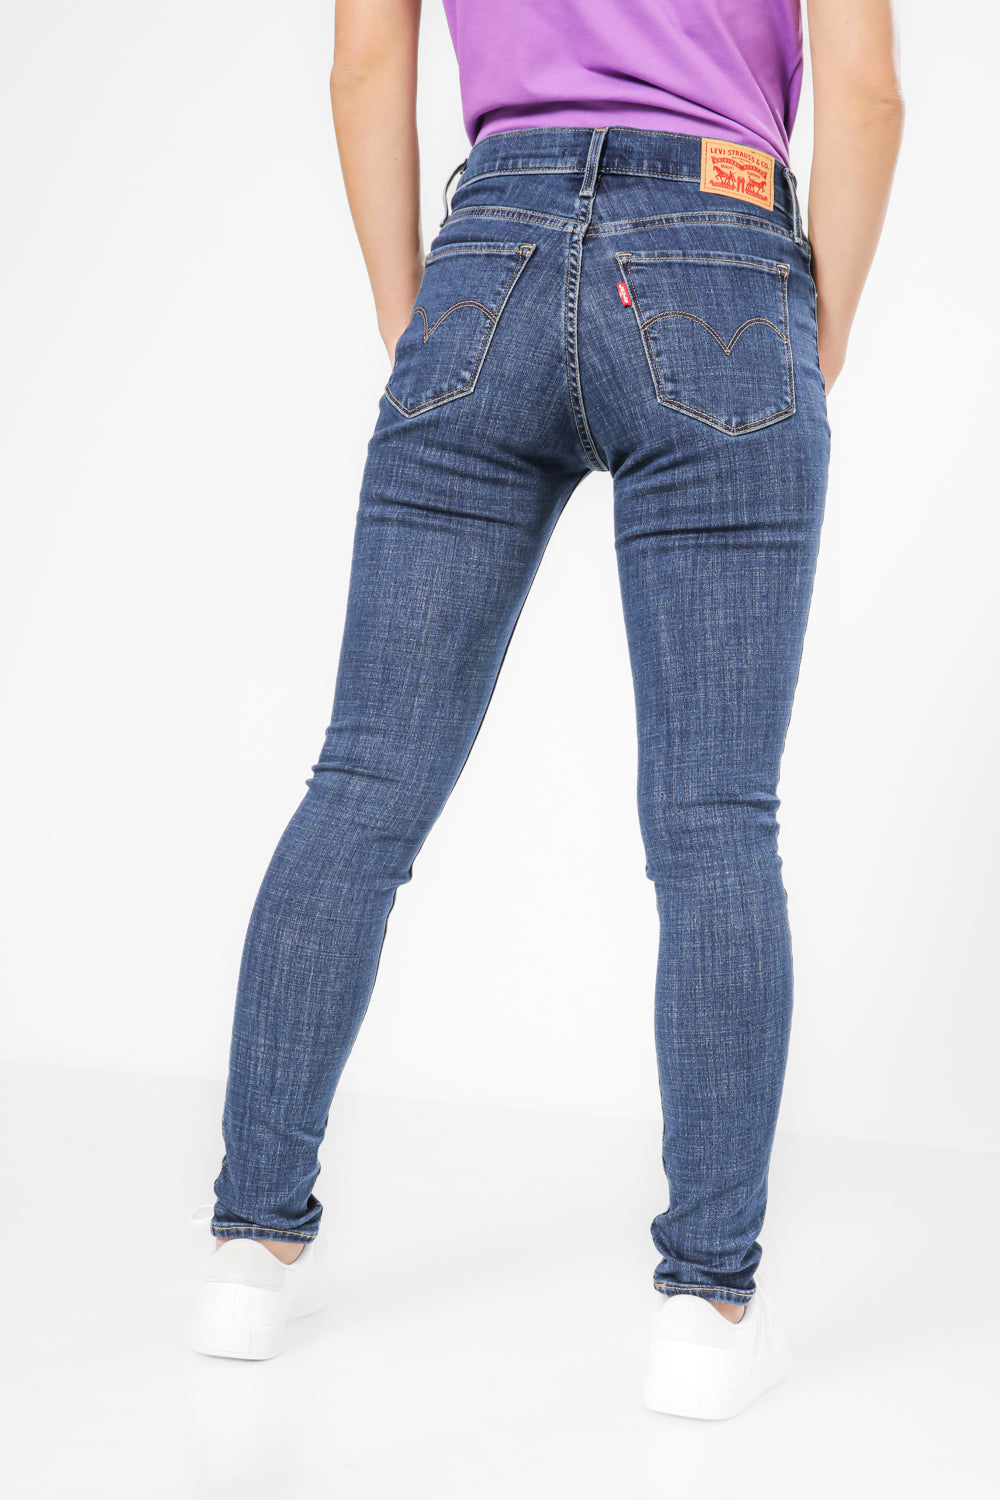 ג'ינס לנשים 311 SHAPING SKINNY בצבע כחול